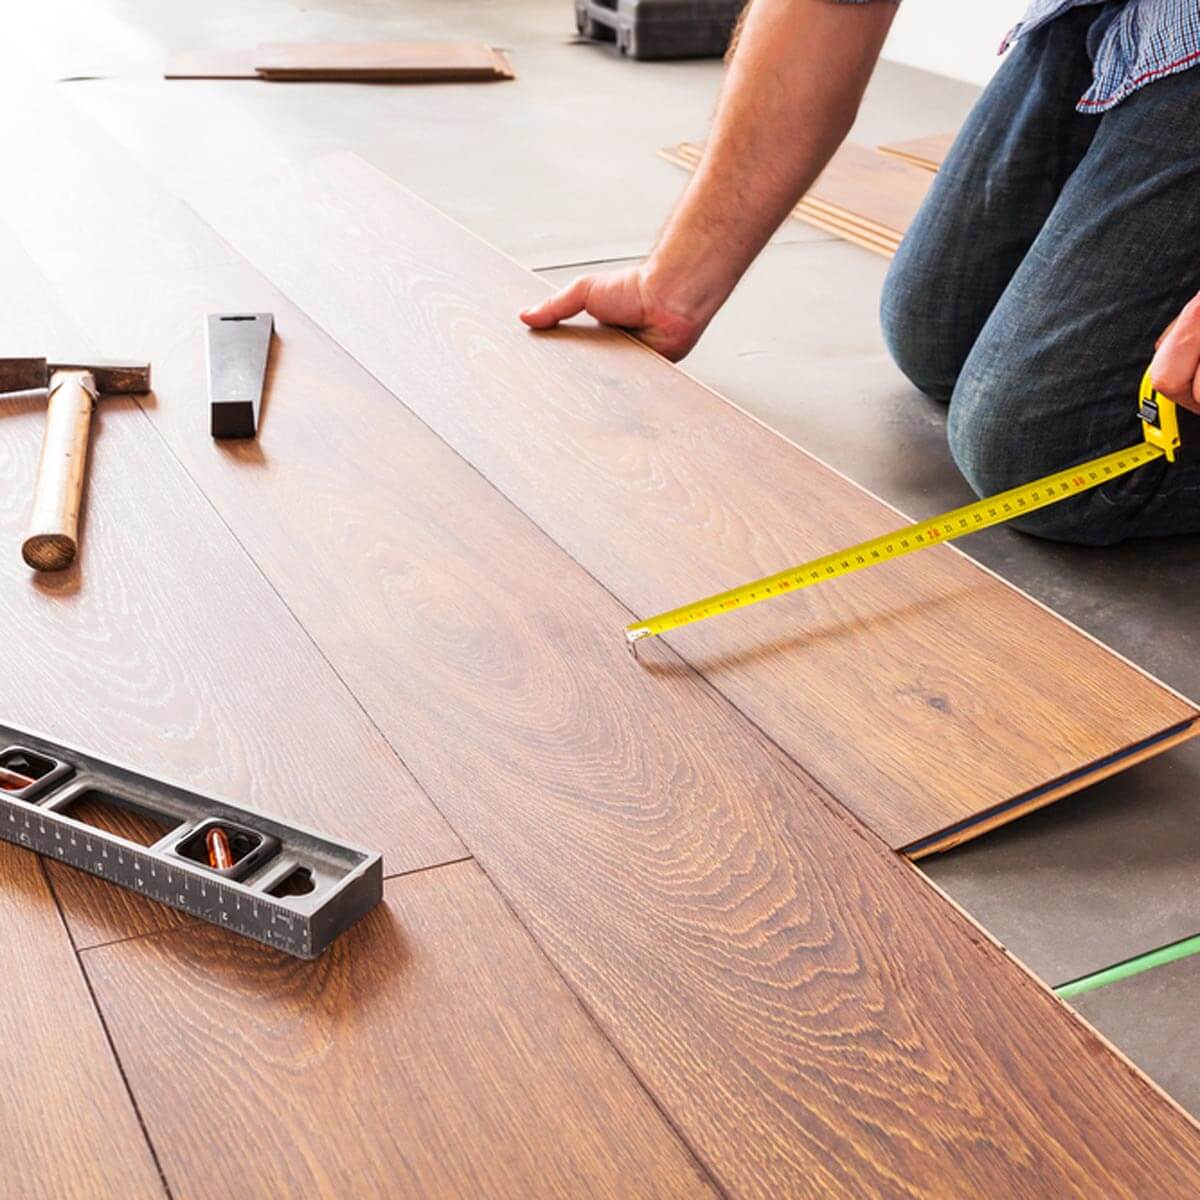 Hướng dẫn từng bước chi tiết giúp bạn lặp đặt sàn gỗ Tếch cách dễ dàng tại nhà - mocphat.vn